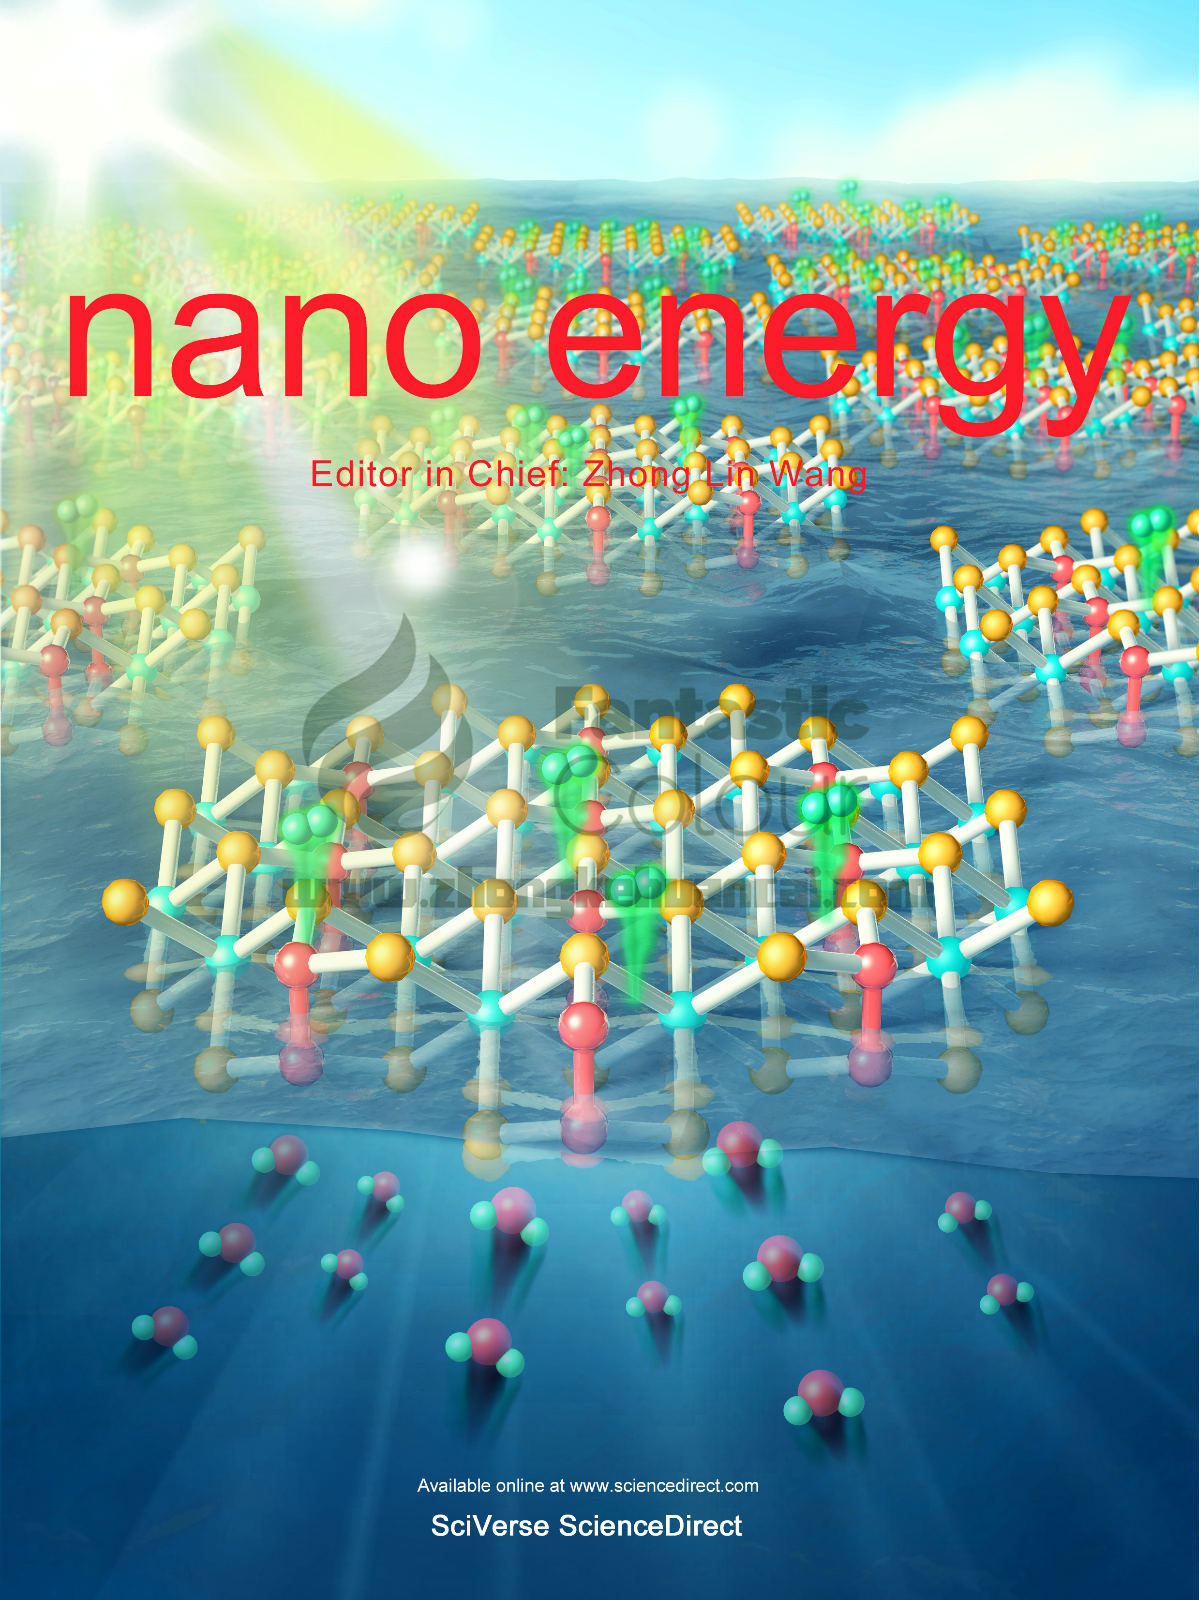 nano energy-国家纳米科学中心